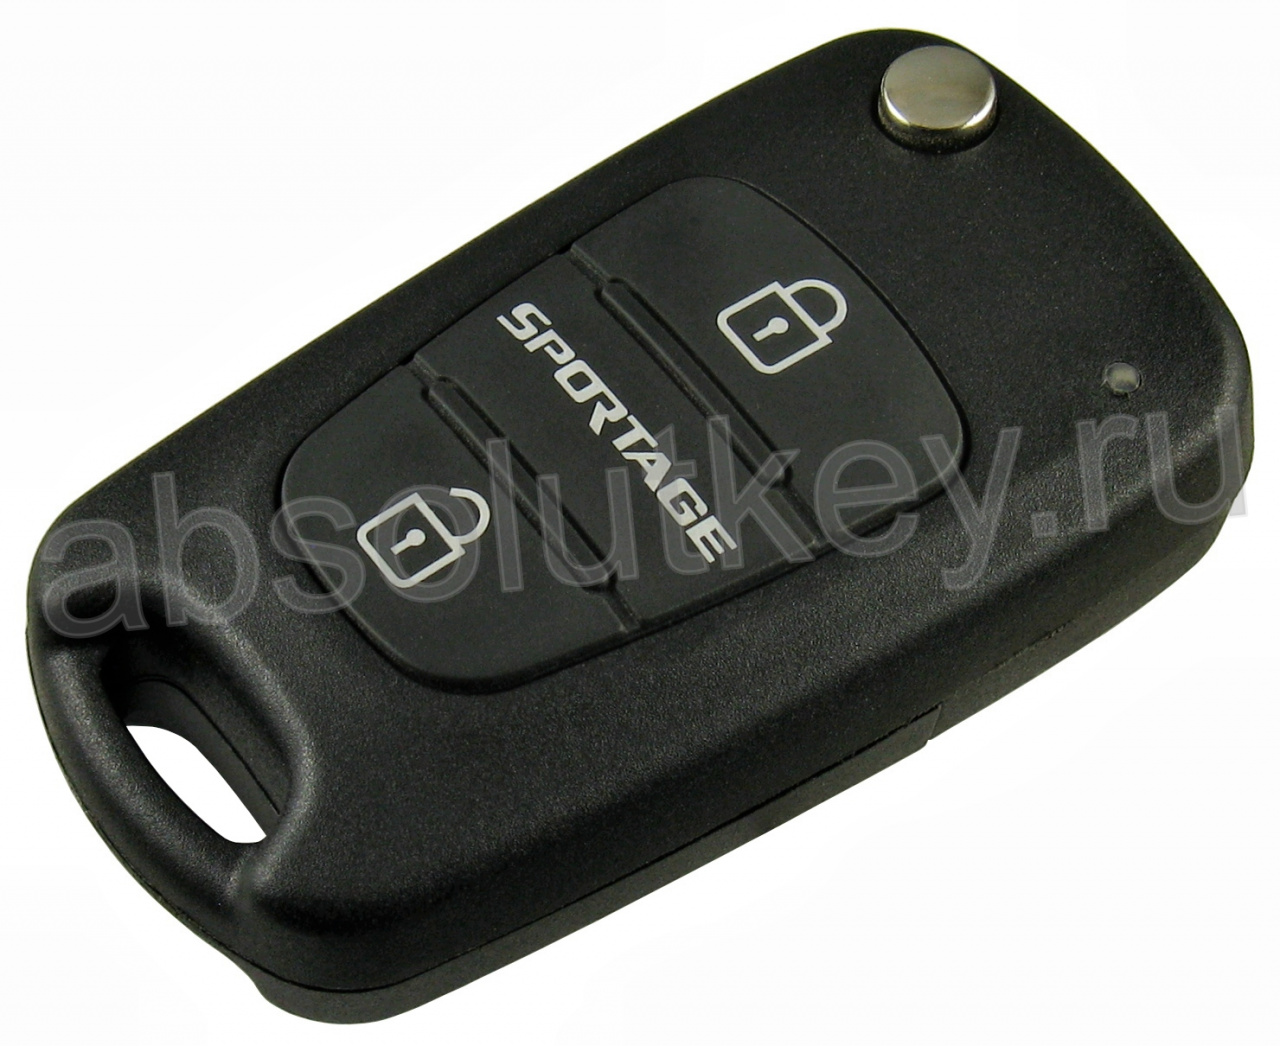 Ключ для Kia Sportage 2010-, Euro, 2 кнопки